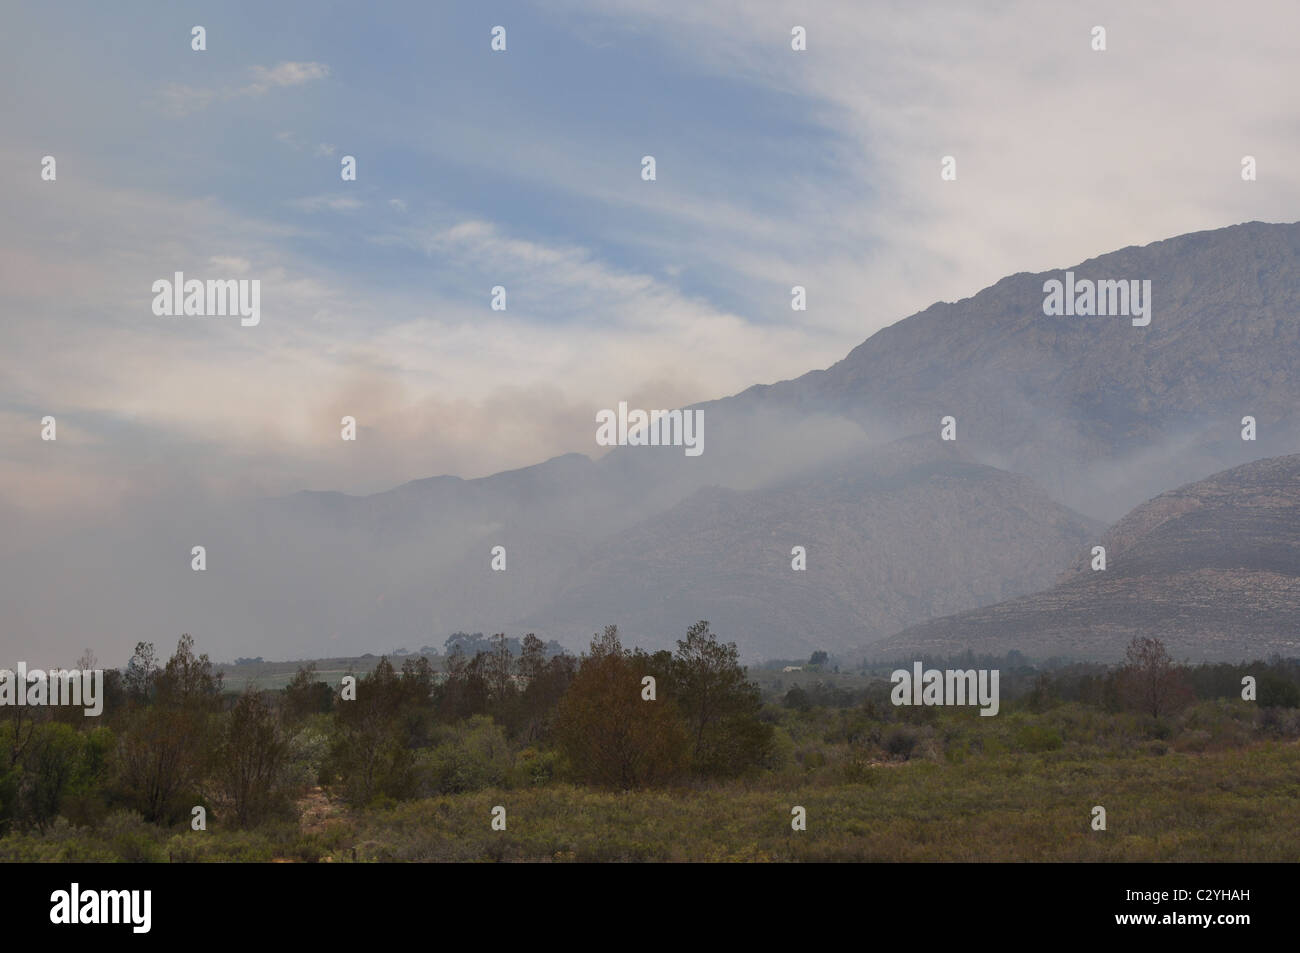 Bush Fire che è fuori controllo, fiamme, fumo, paesaggio Foto Stock